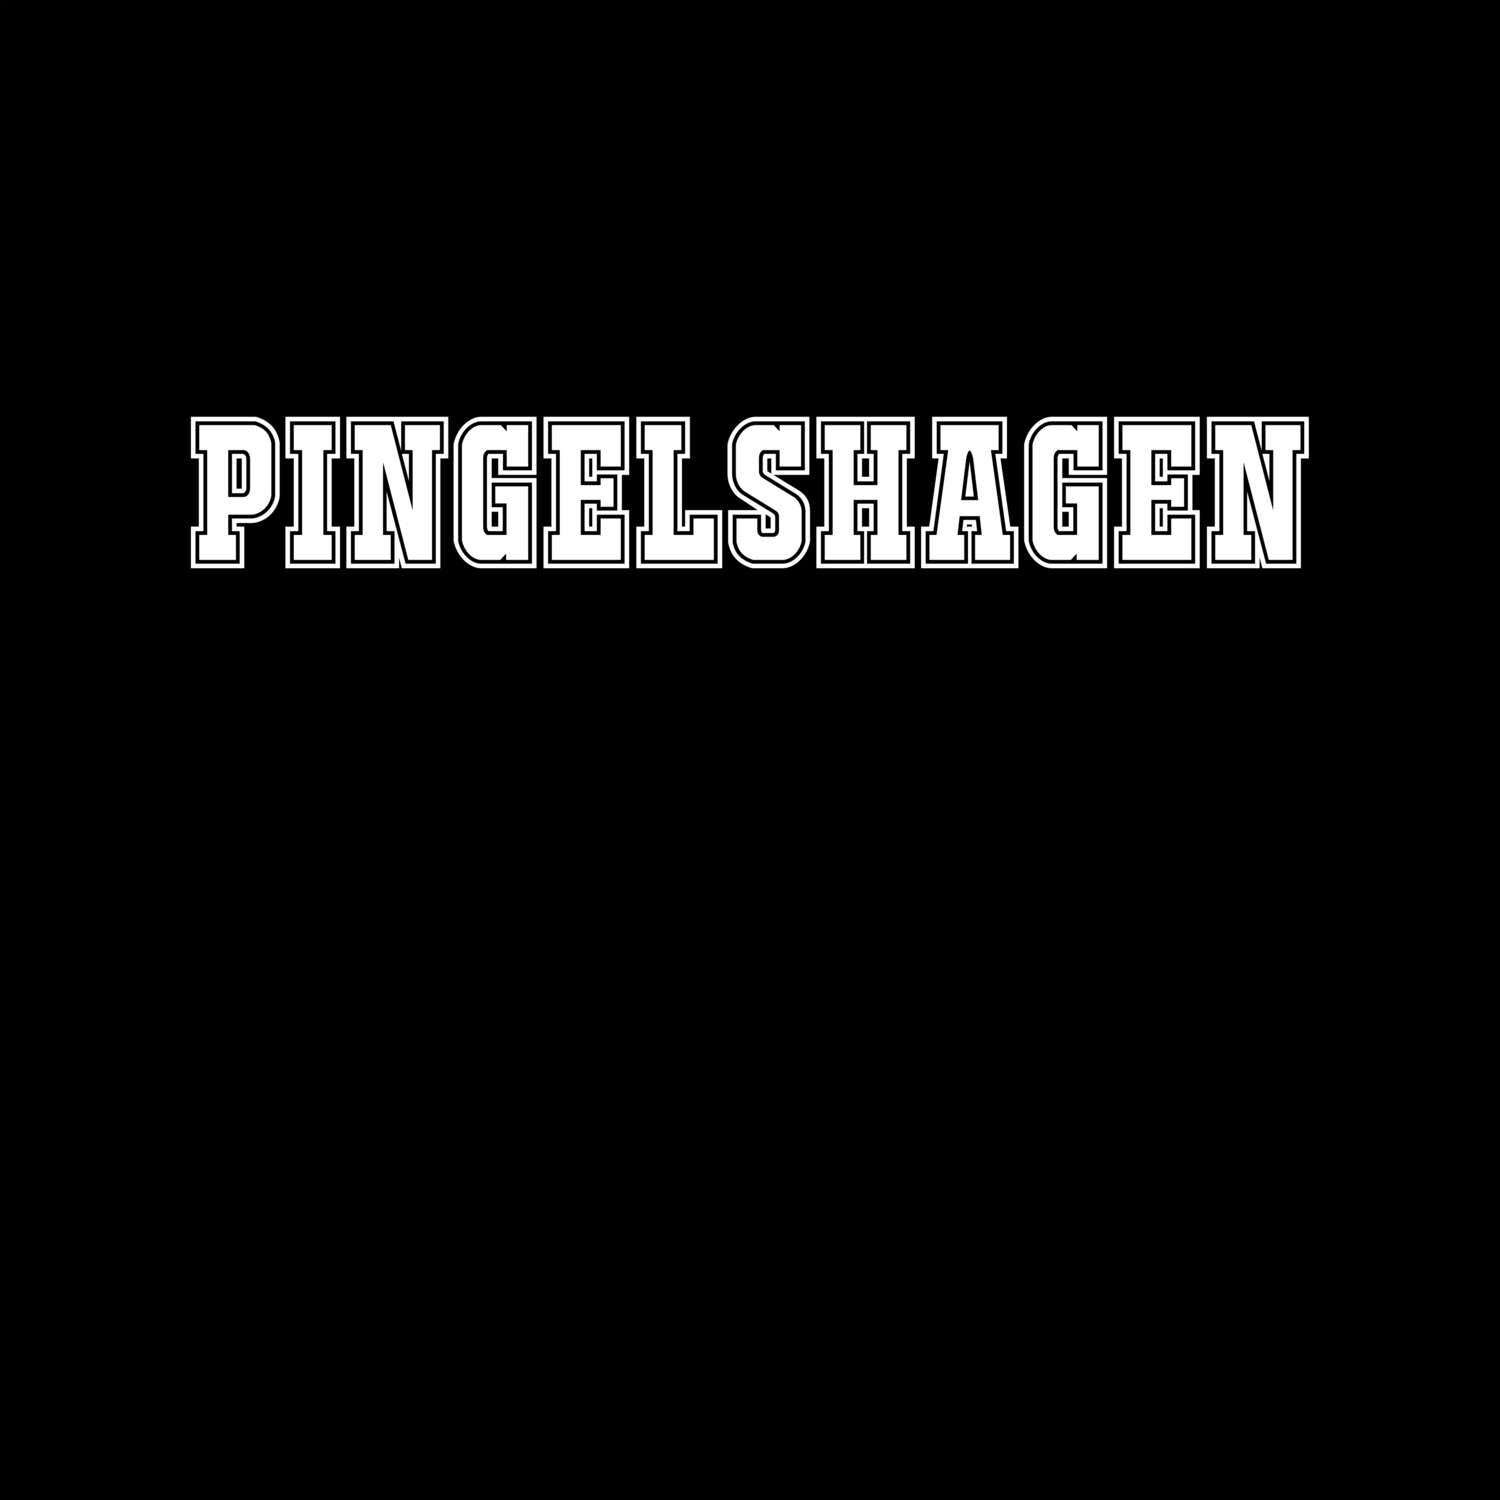 Pingelshagen T-Shirt »Classic«